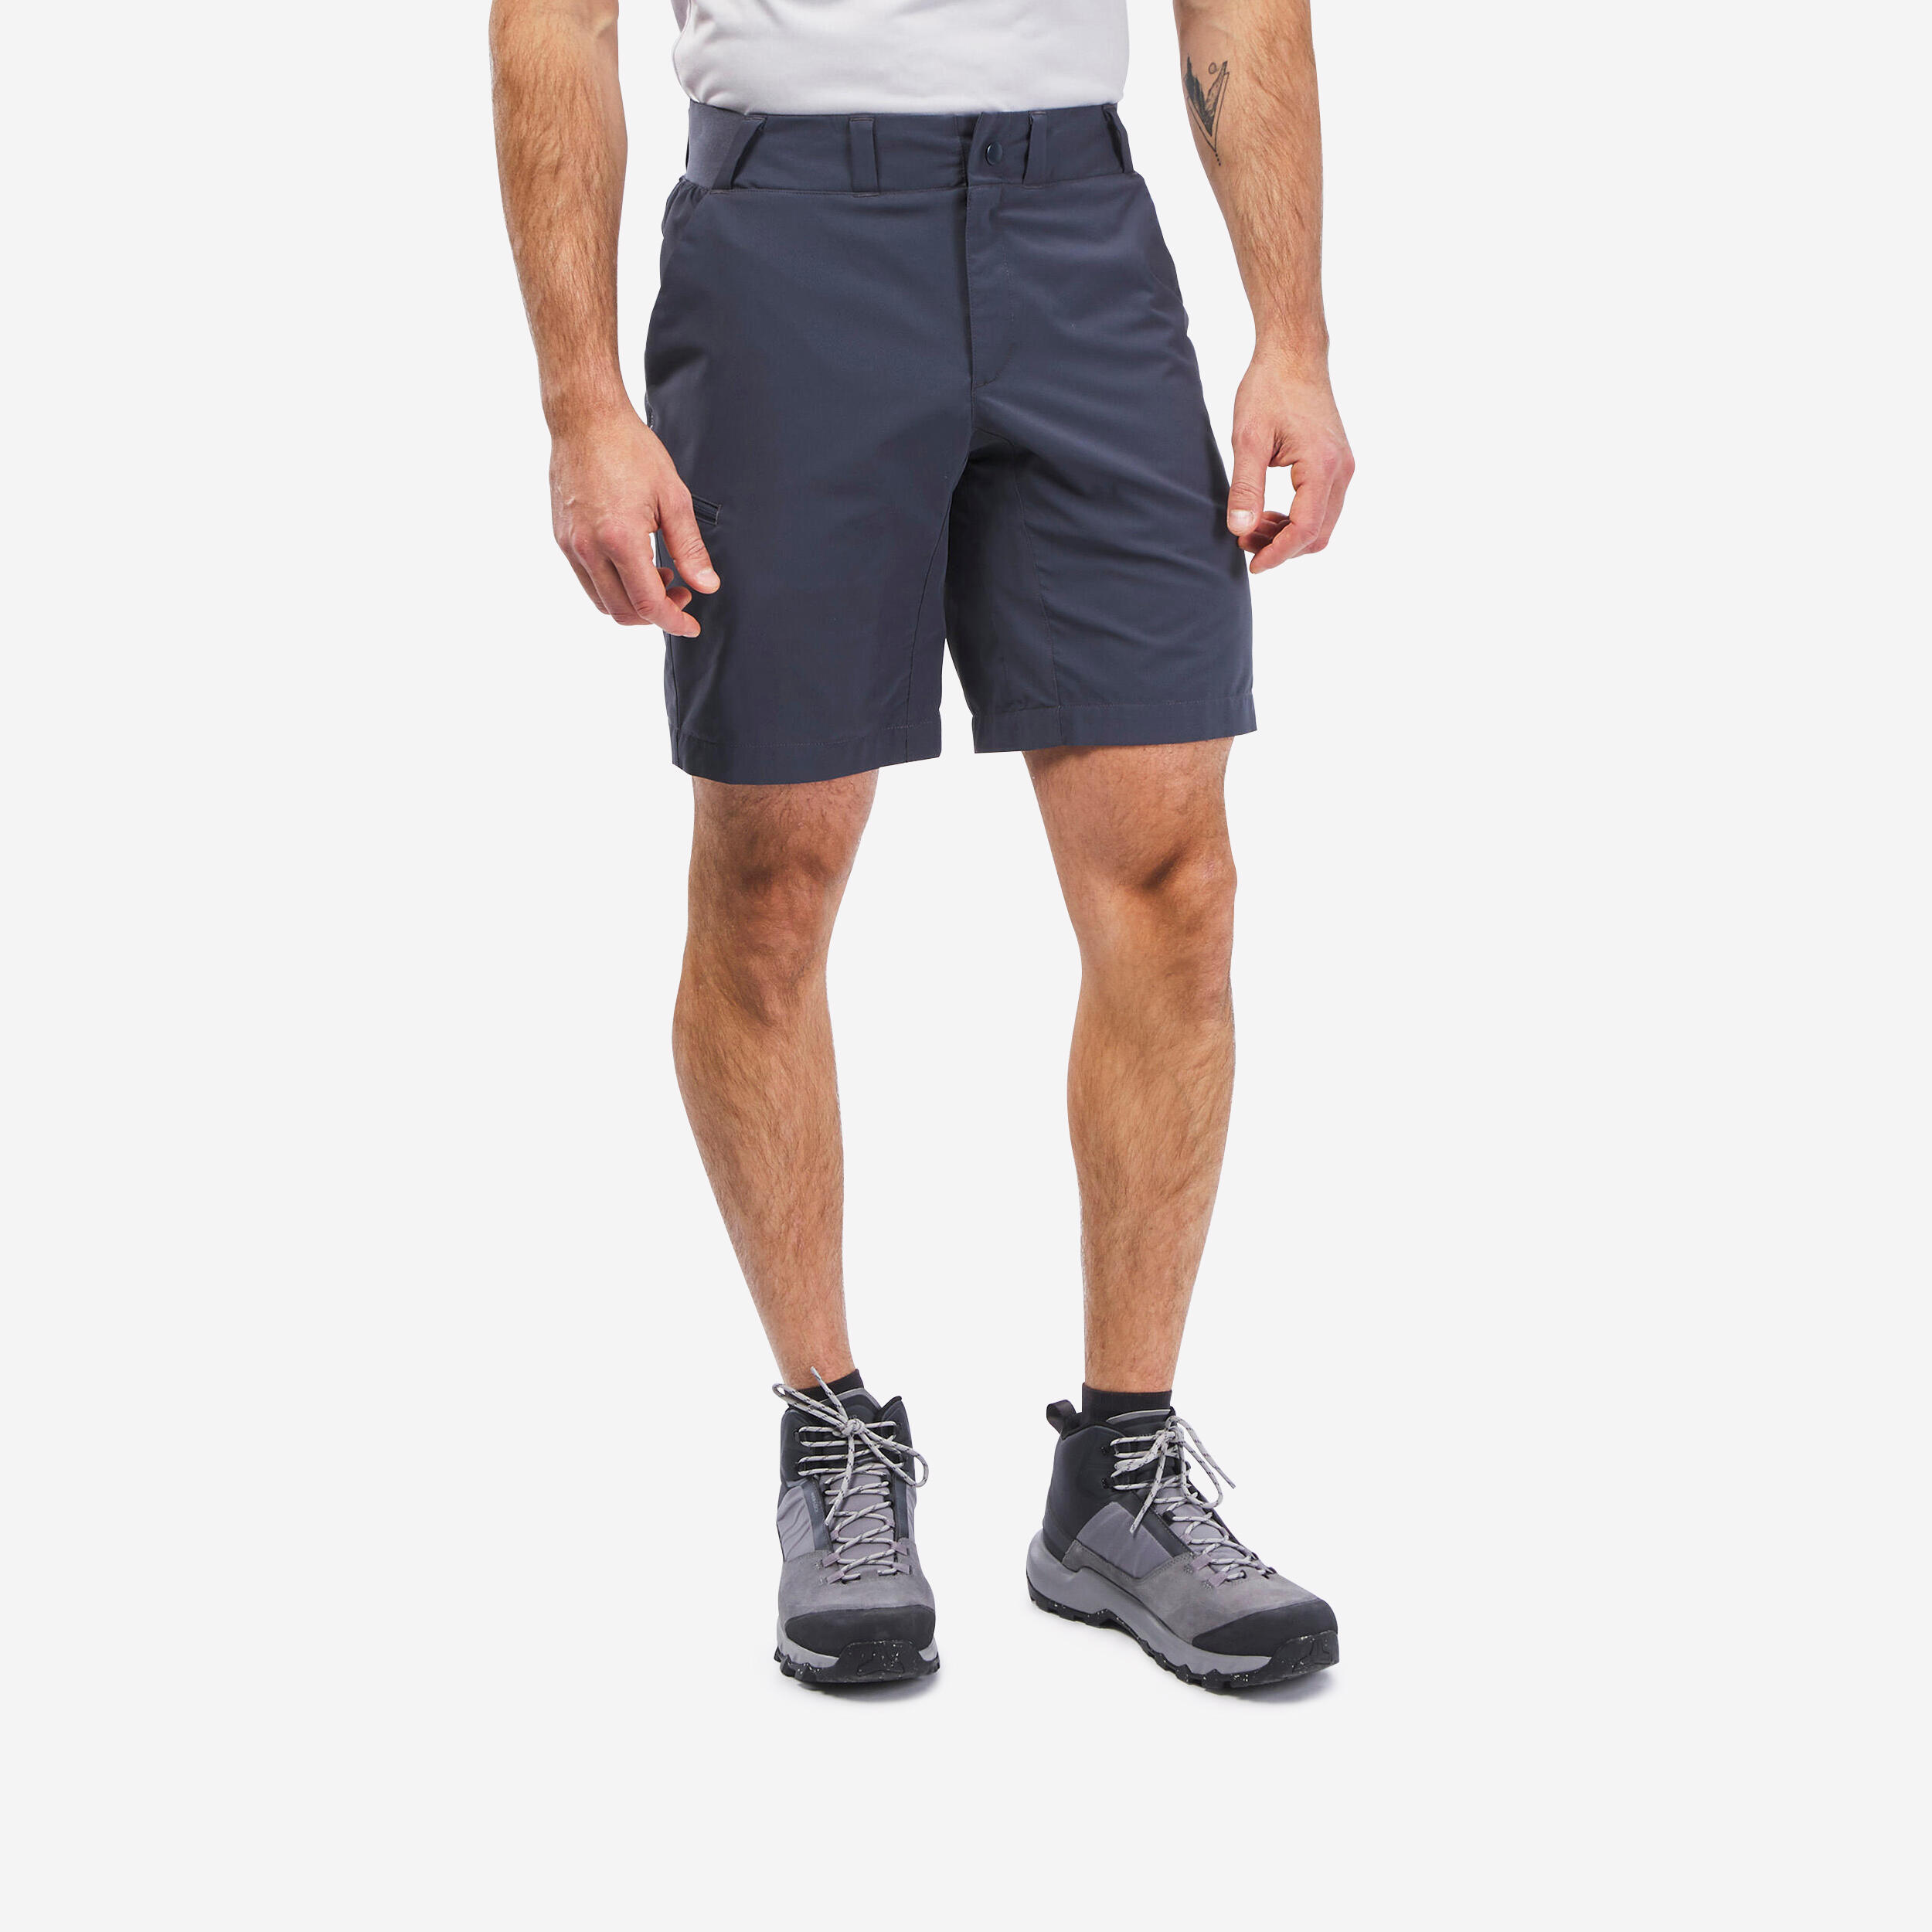 Men’s Hiking Shorts - MH100 1/5